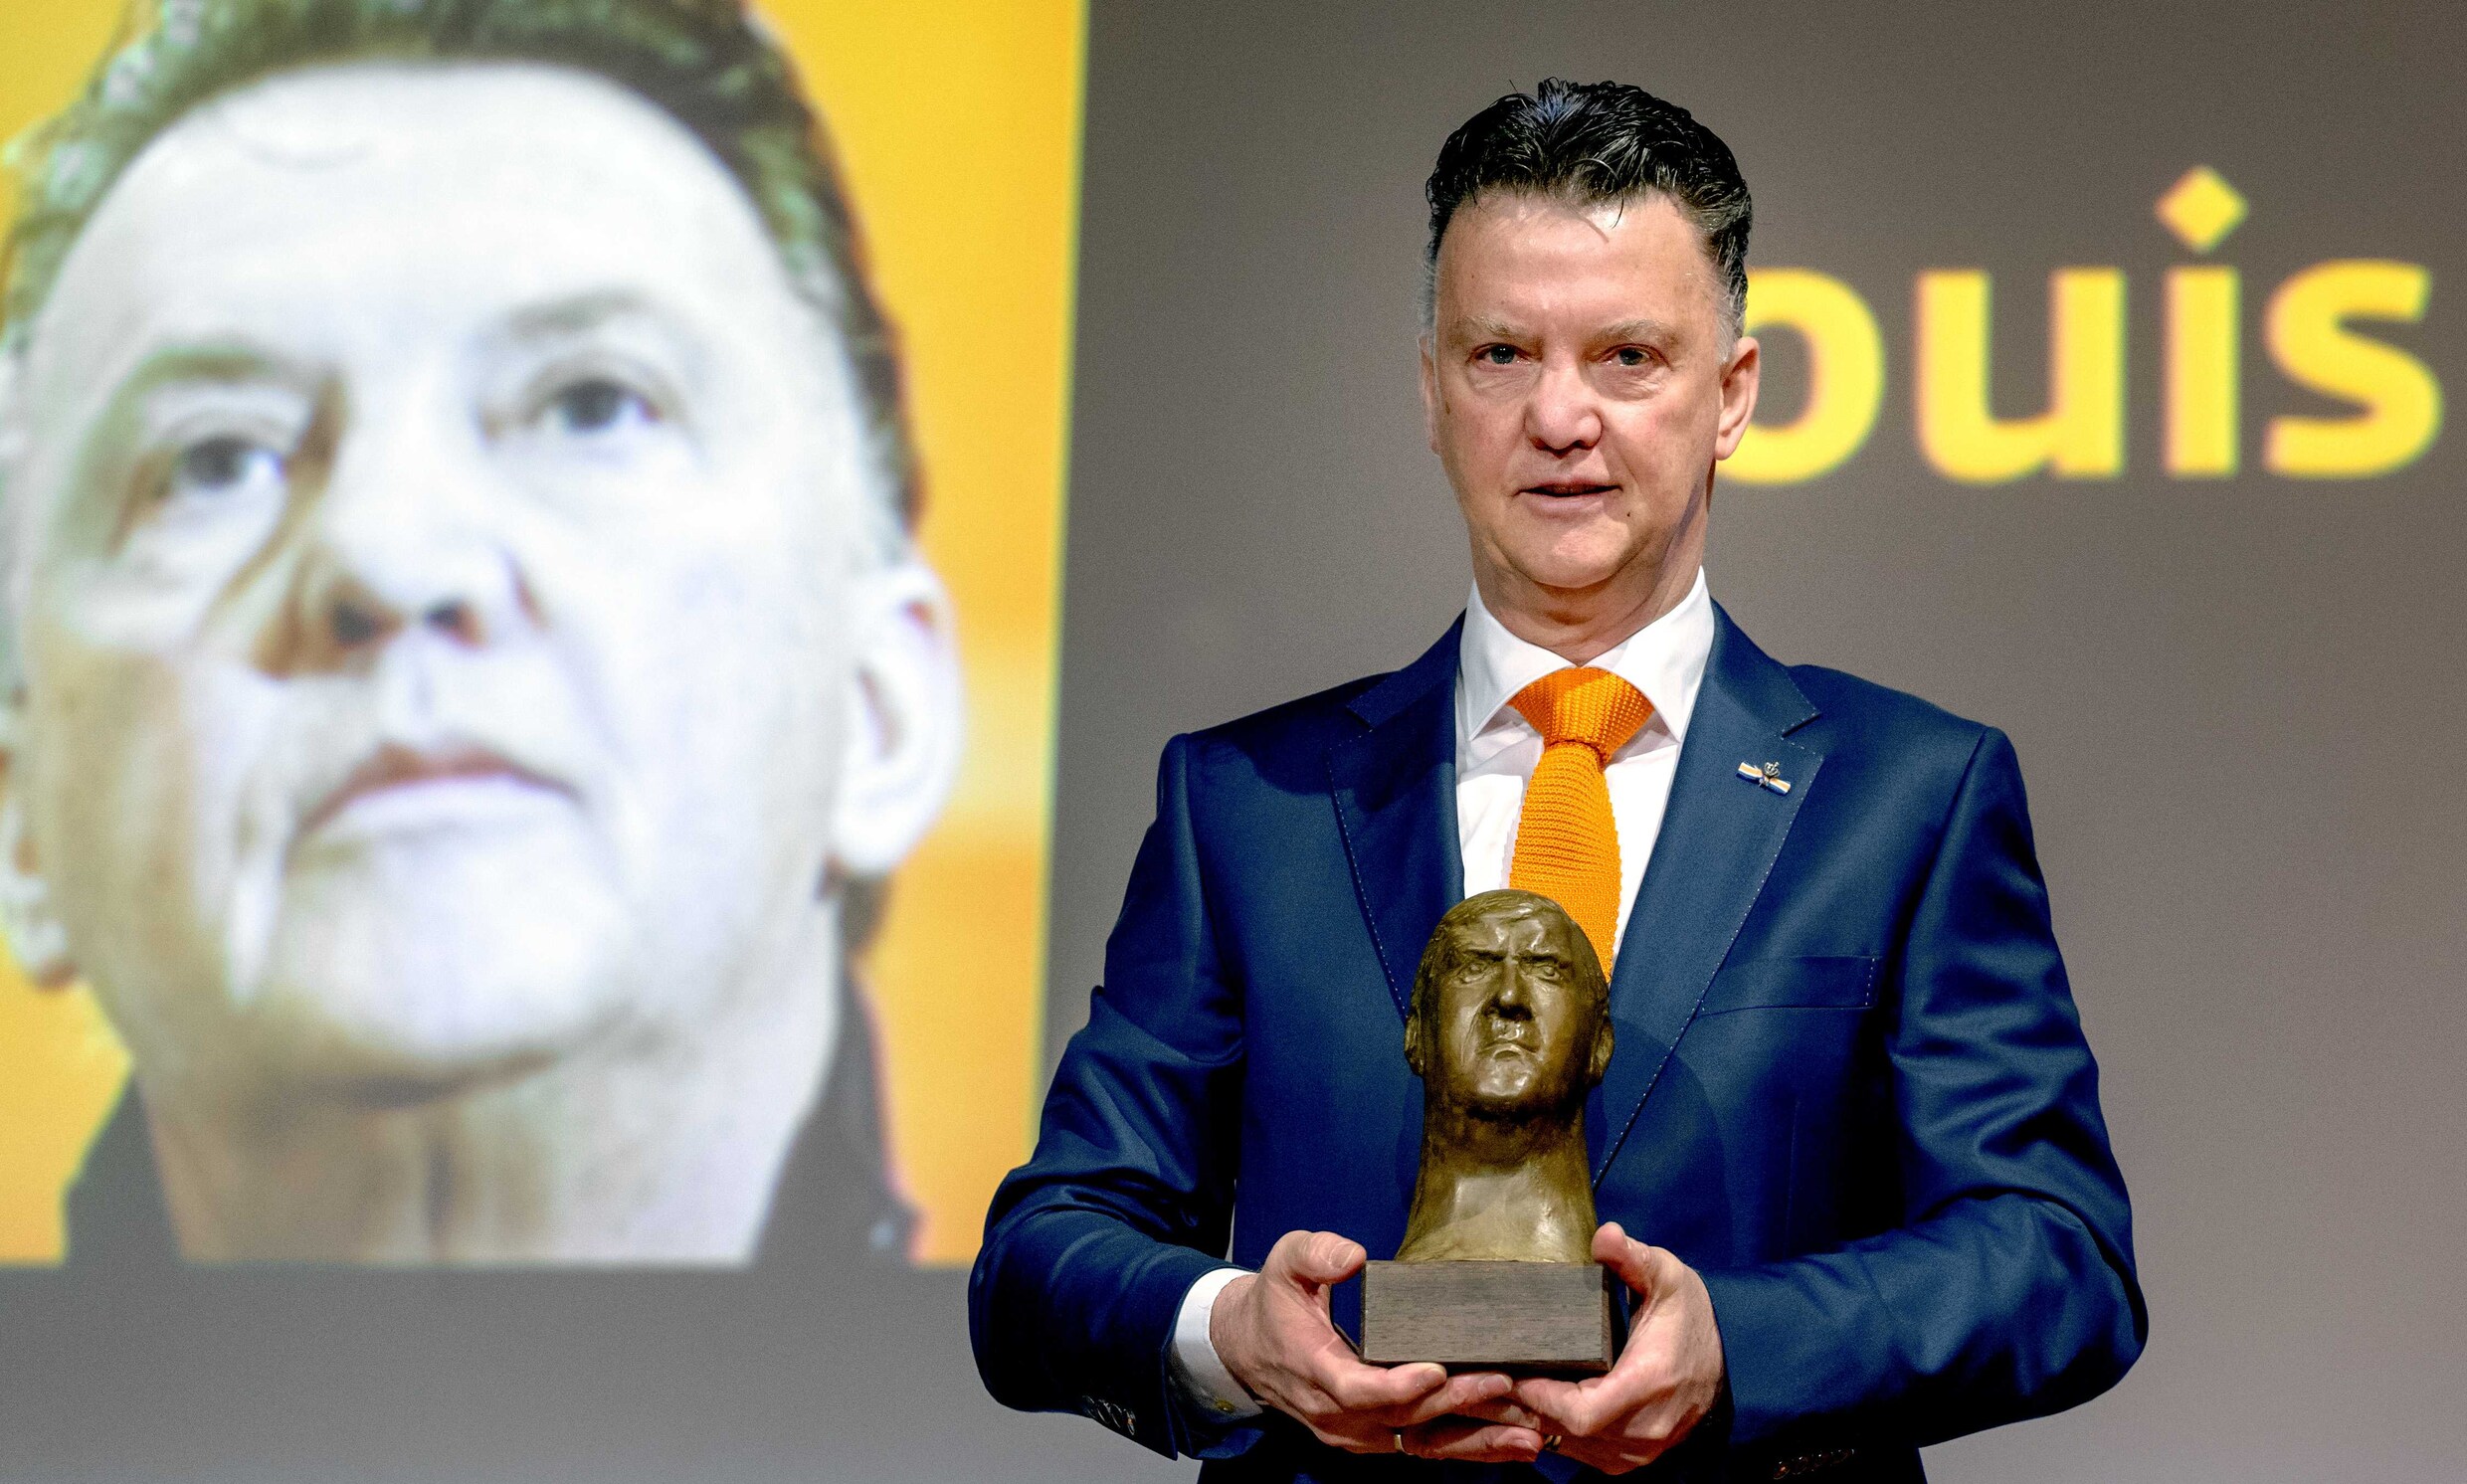 Van Gaal trots op Geesink Award